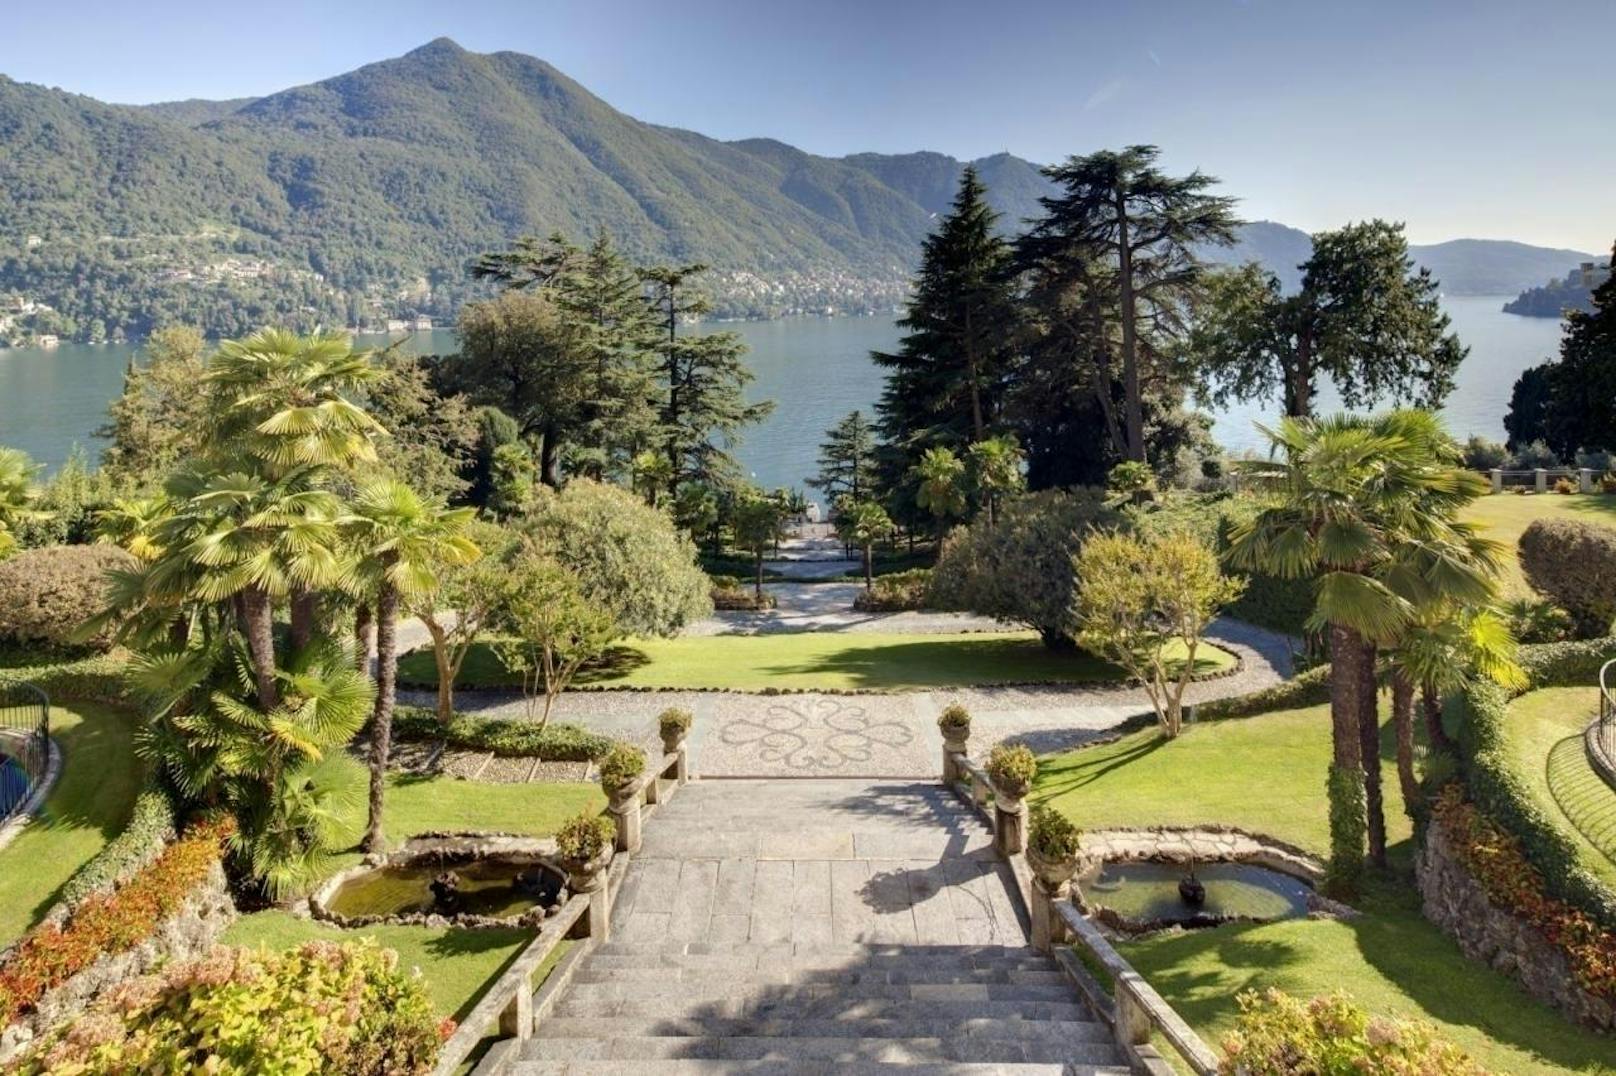 <b>Villa Passalacqua, Italien:</b> Zimmerzahl: 9, maximale Gästezahl: 23, Preis pro Woche: 37.000 Euro bis 10 Gäste, jeder zusätzliche Gast kostet pro Woche 2.200 Euro.